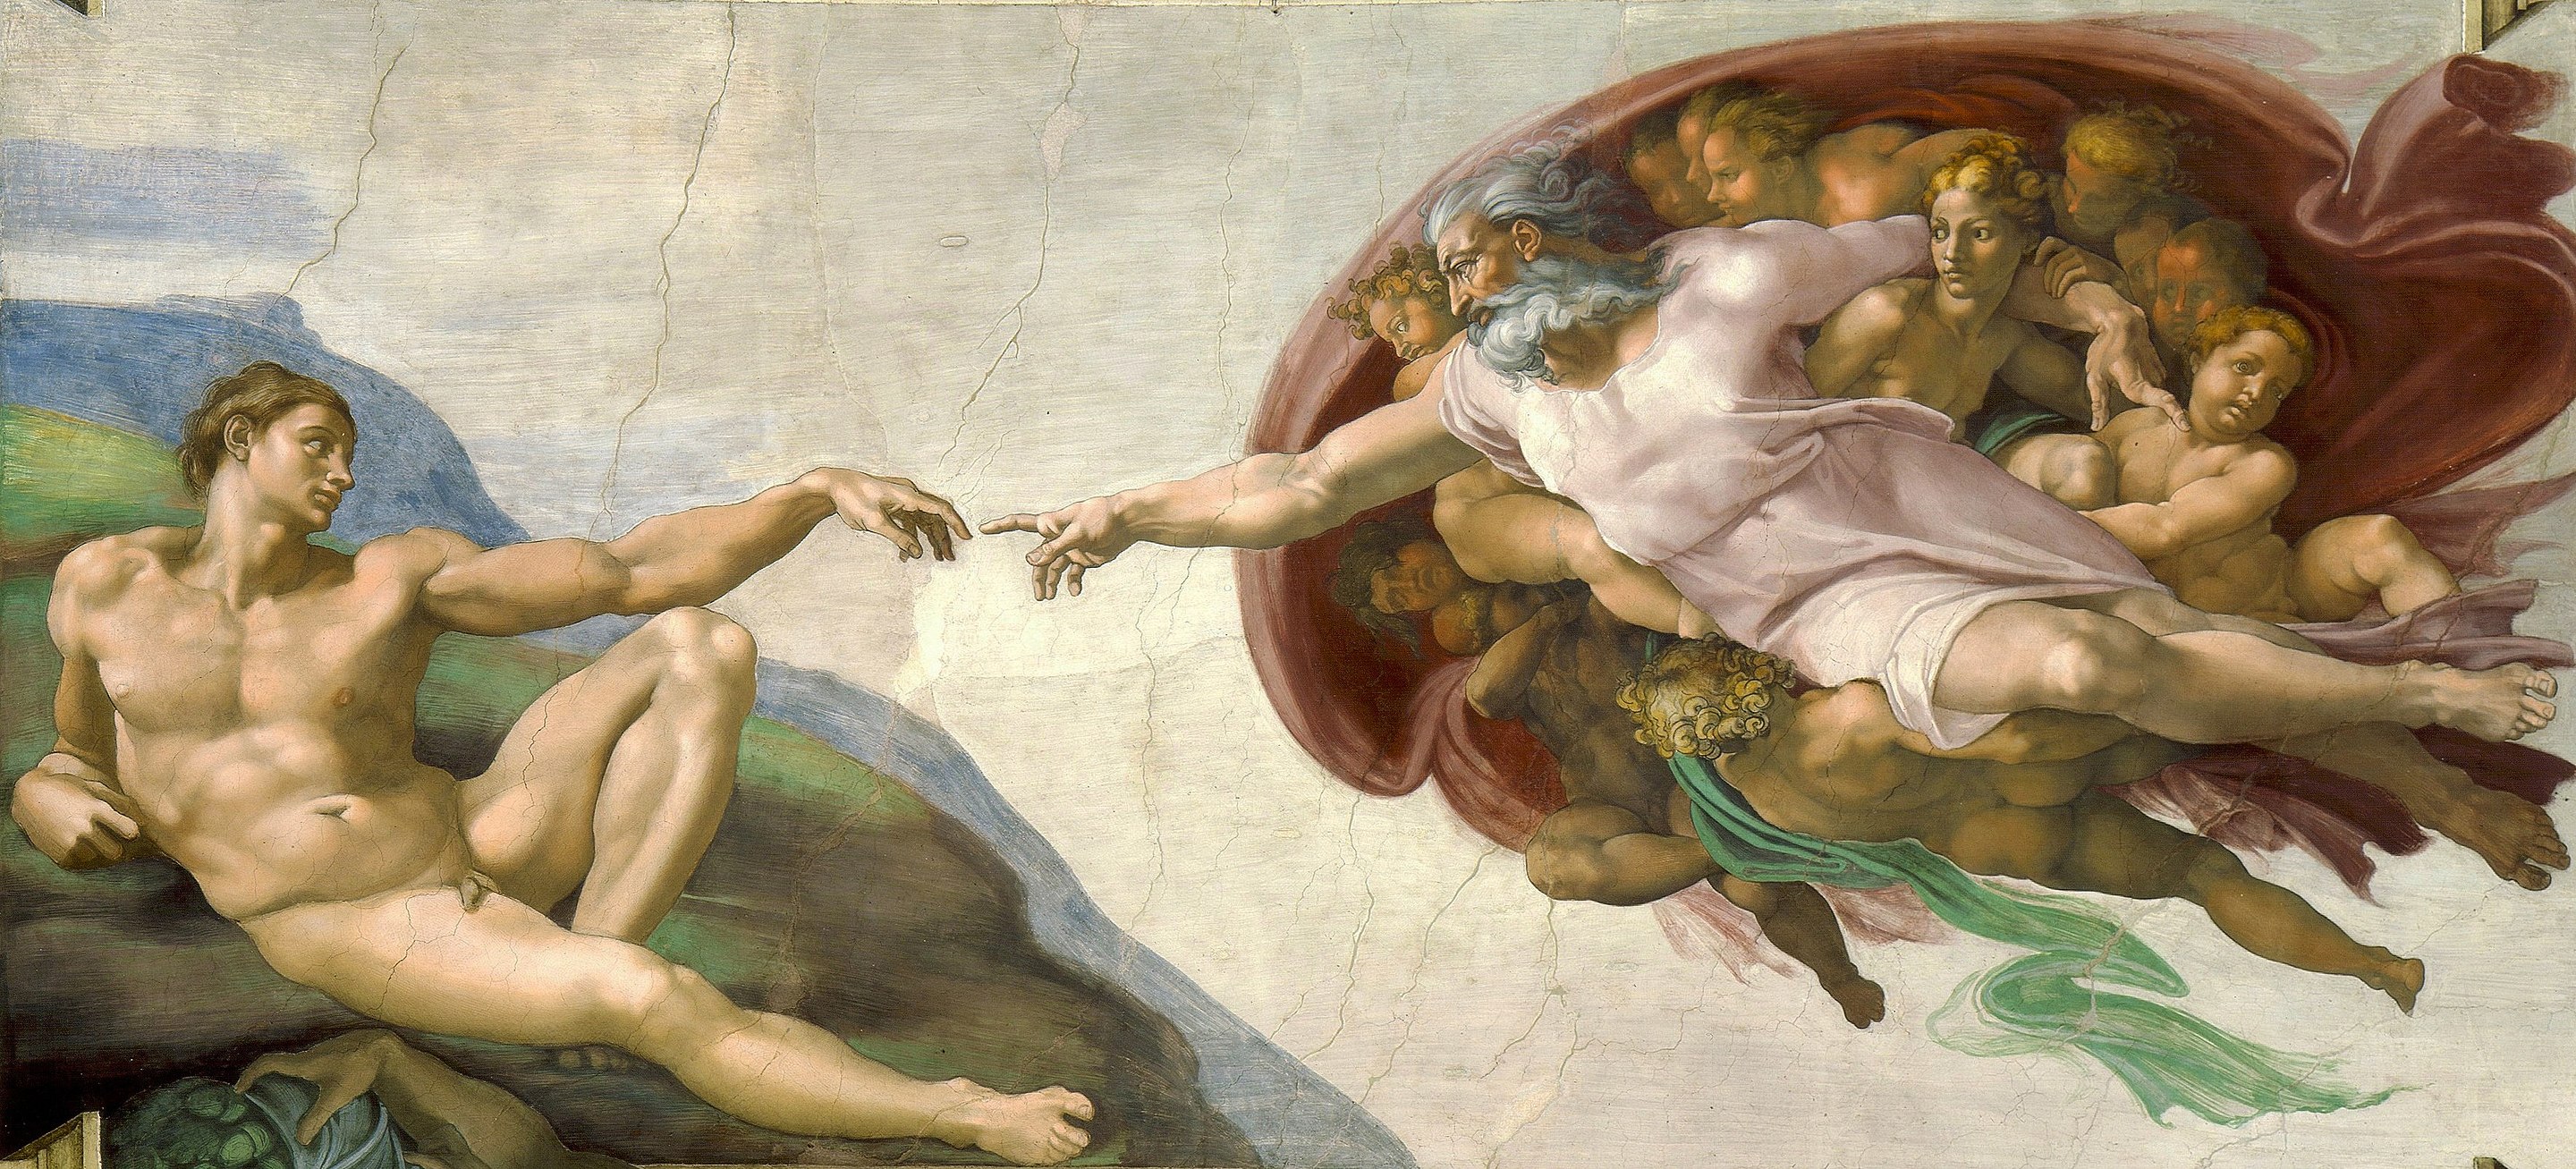 La creazione di Adamo by Michelangelo di Lodovico Buonarroti Simoni - 1508–1512 circa - 280 × 570 cm 